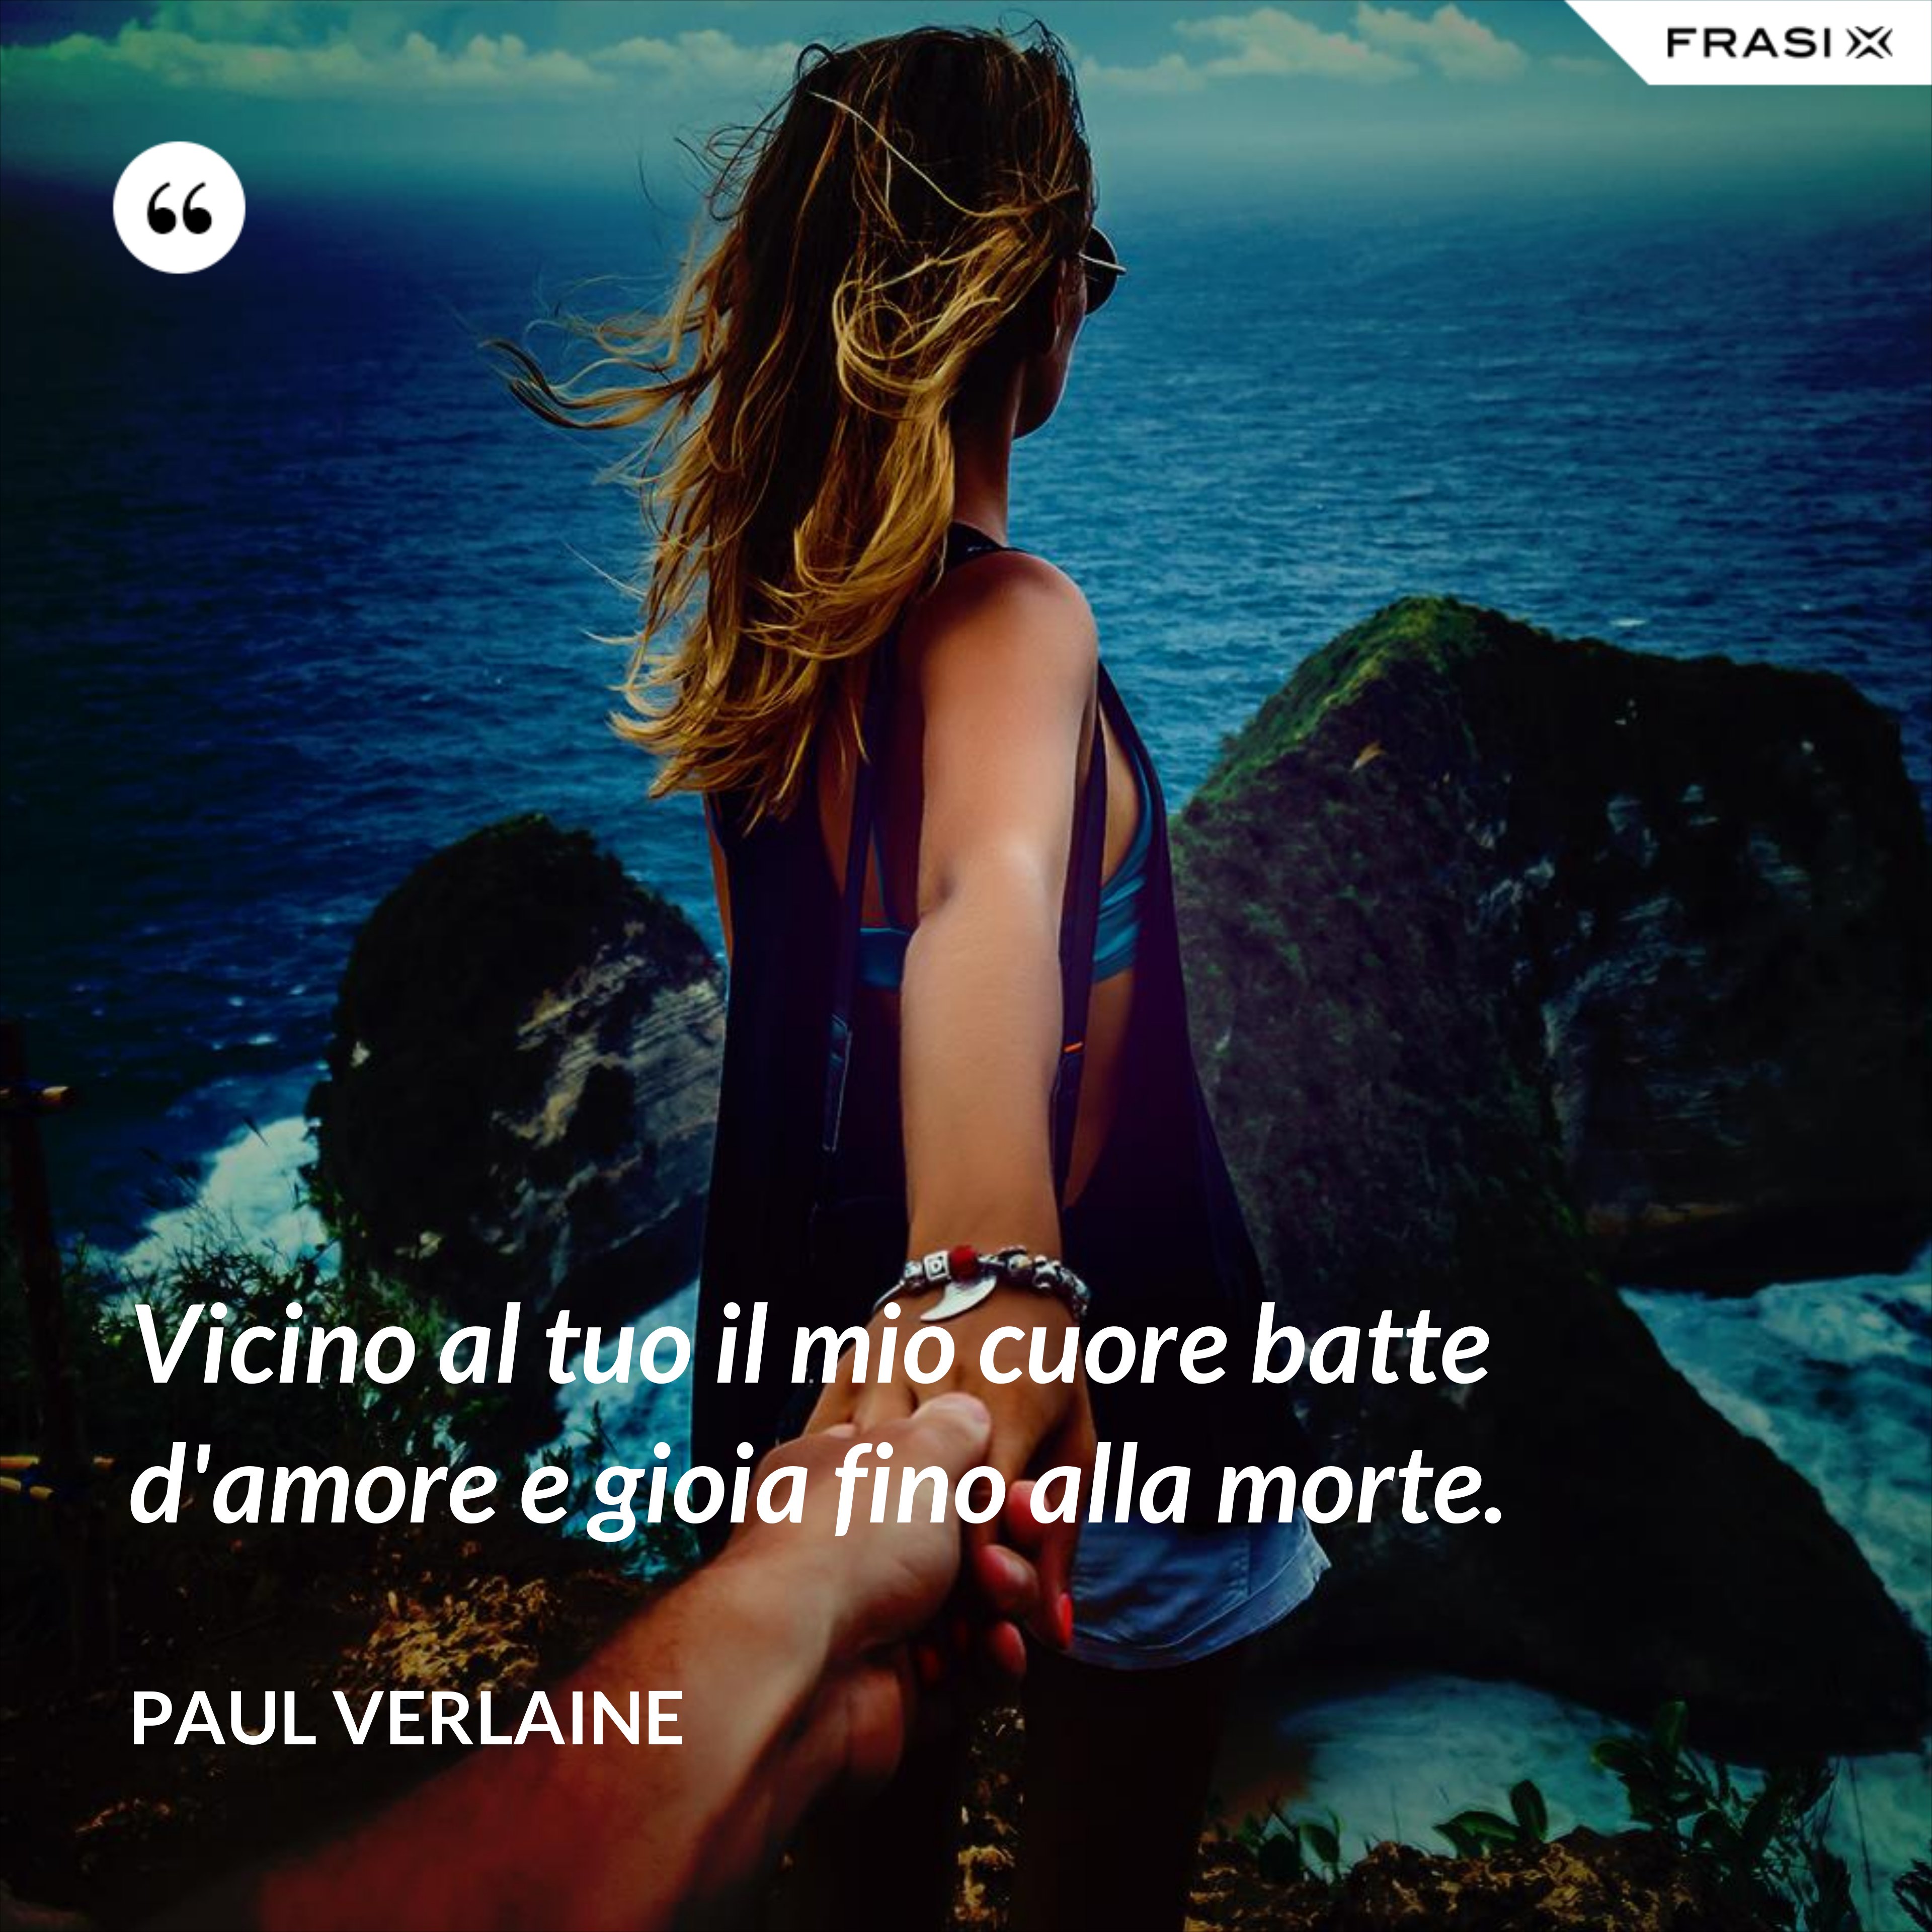 Vicino al tuo il mio cuore batte d'amore e gioia fino alla morte. - Paul Verlaine